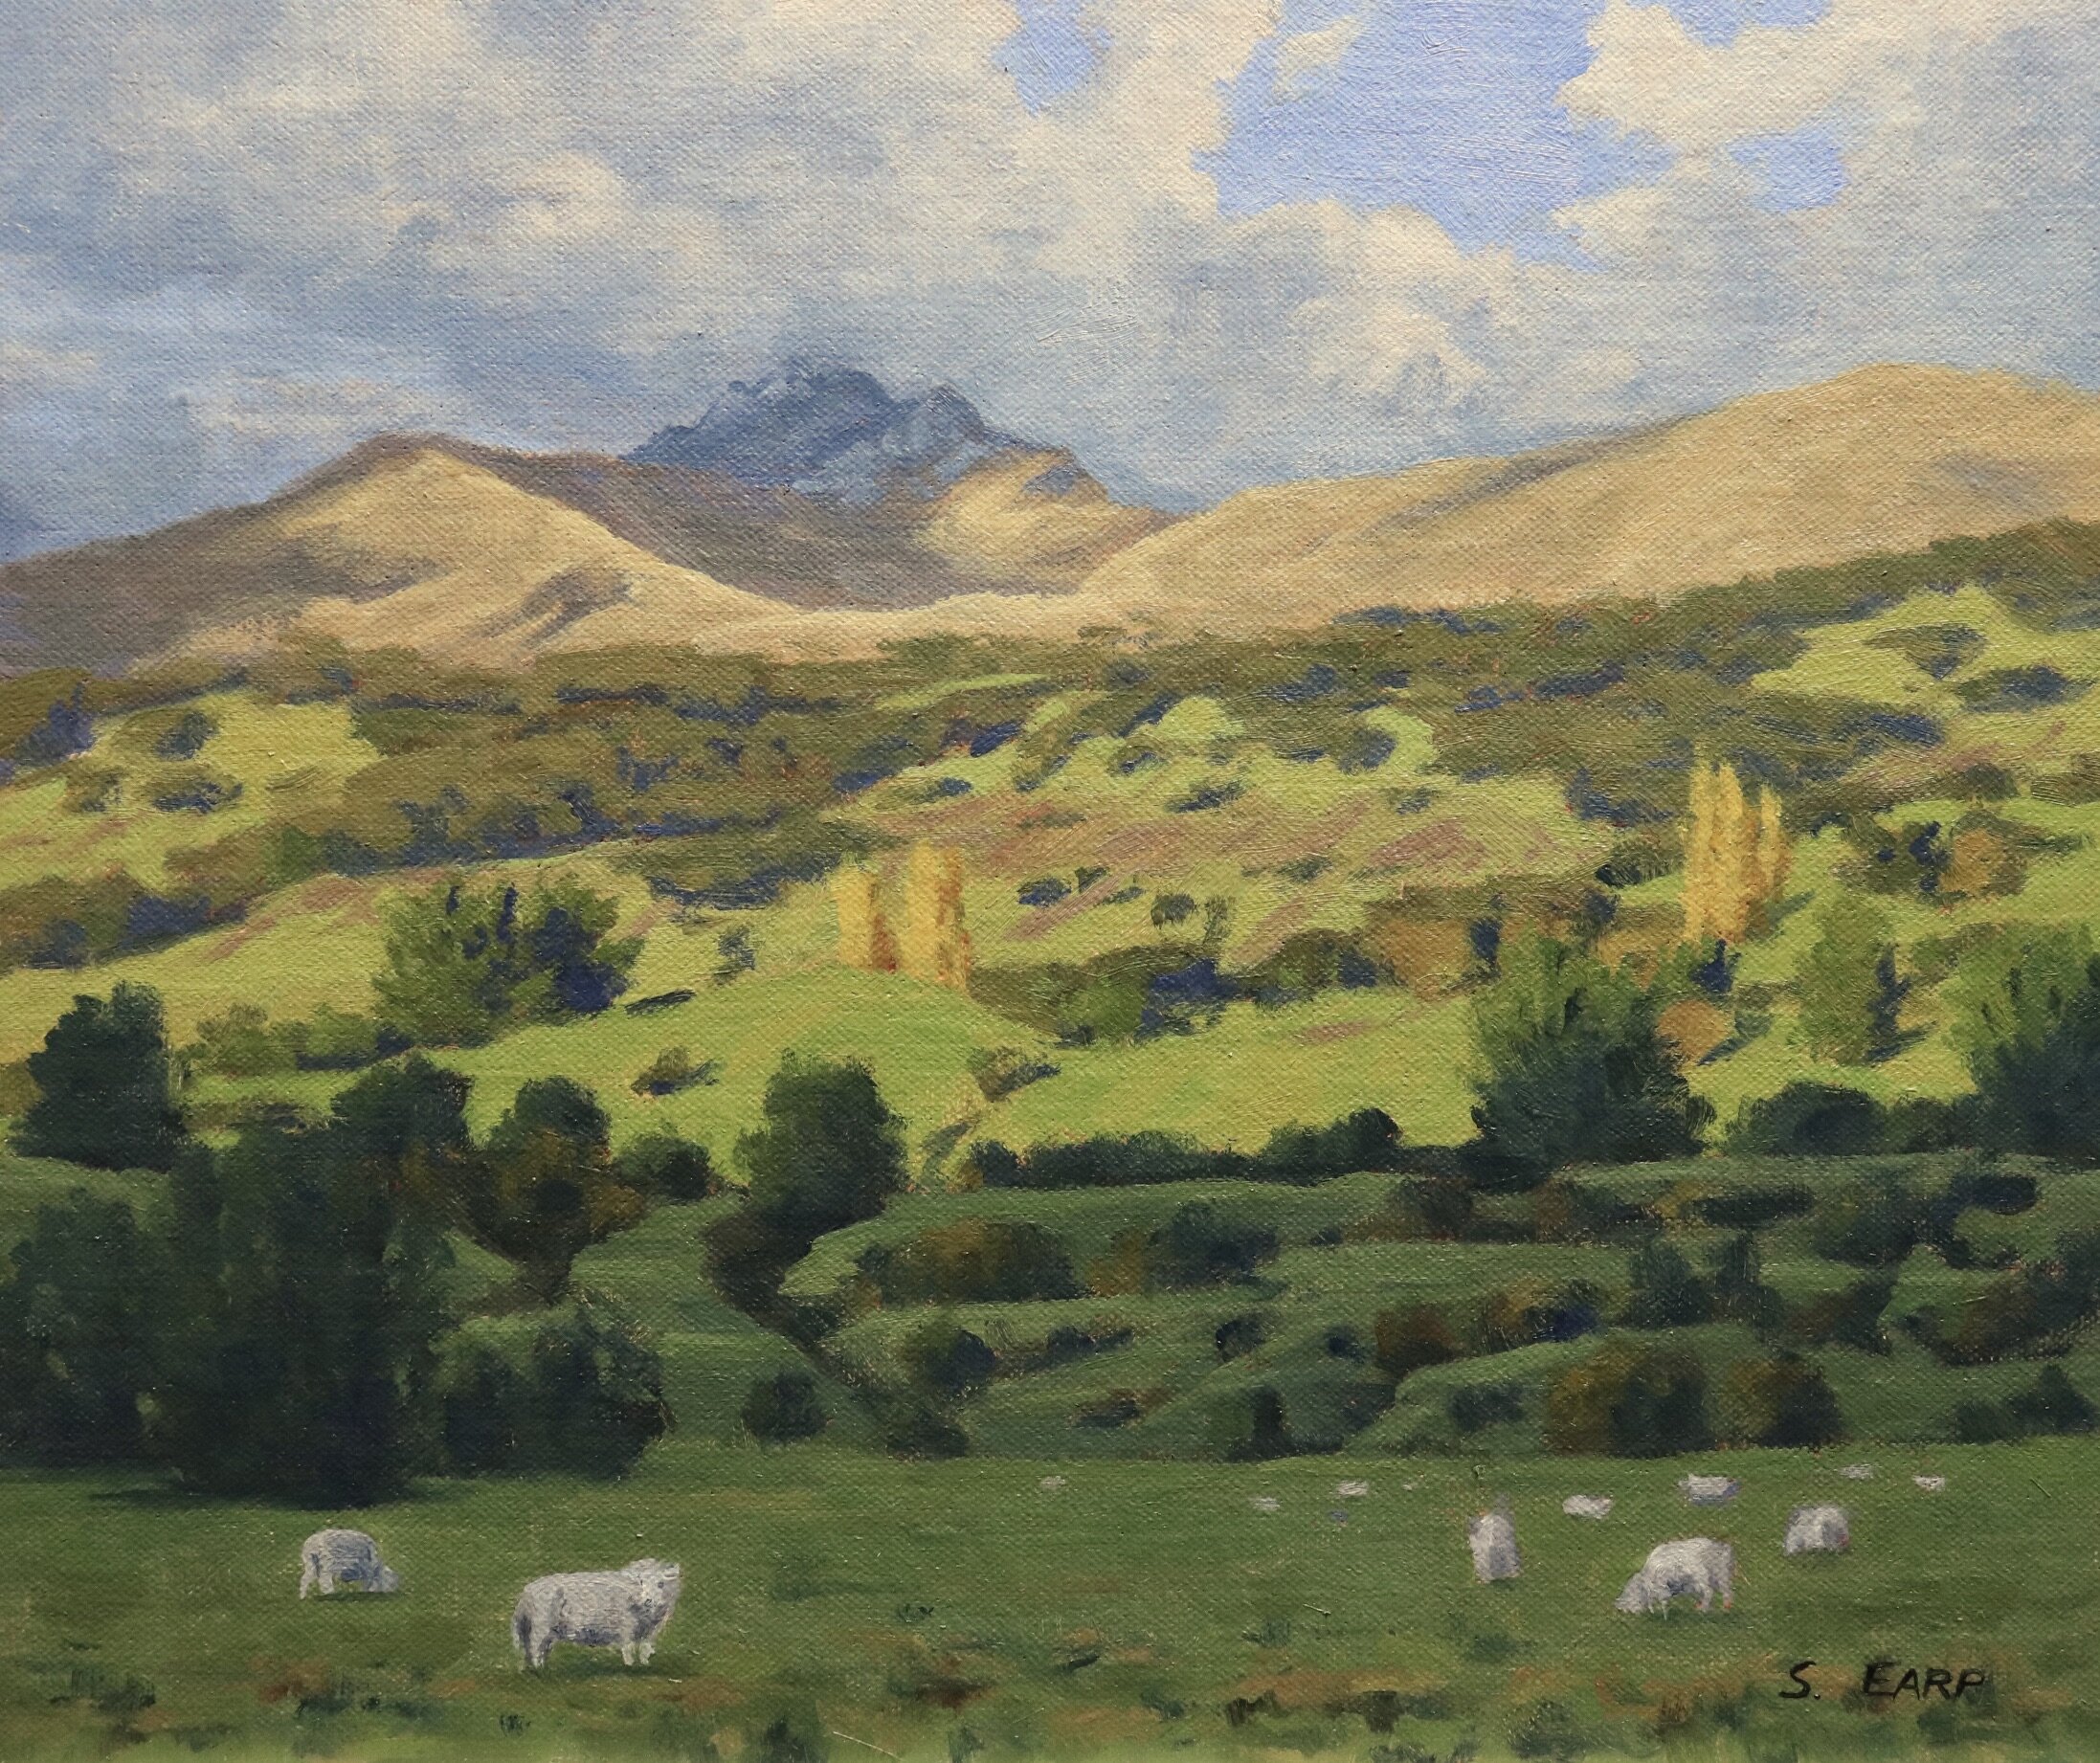 Glenorchy - Samuel Earp - oil painting.jpeg